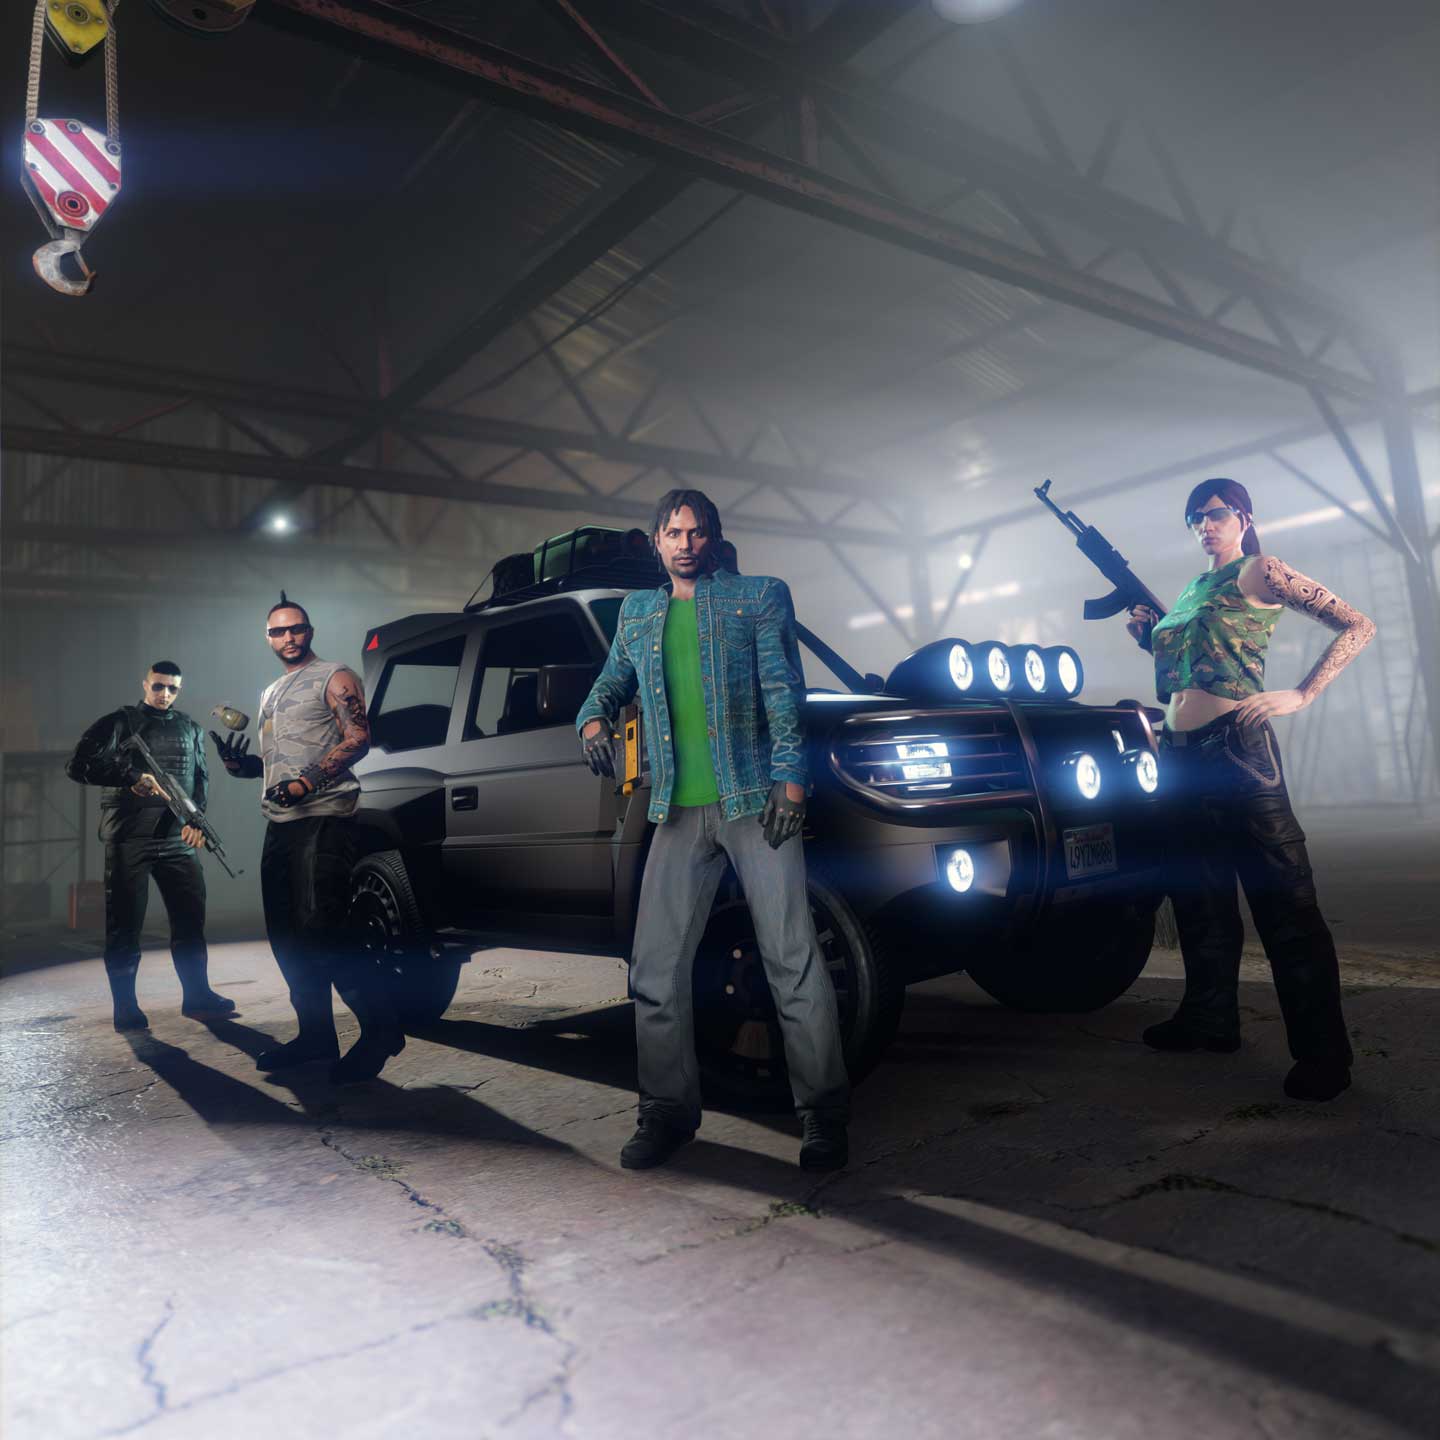 GTA Online recibirá San Andreas Mercenaries, su nueva expansión, el 13 de  junio - Vandal